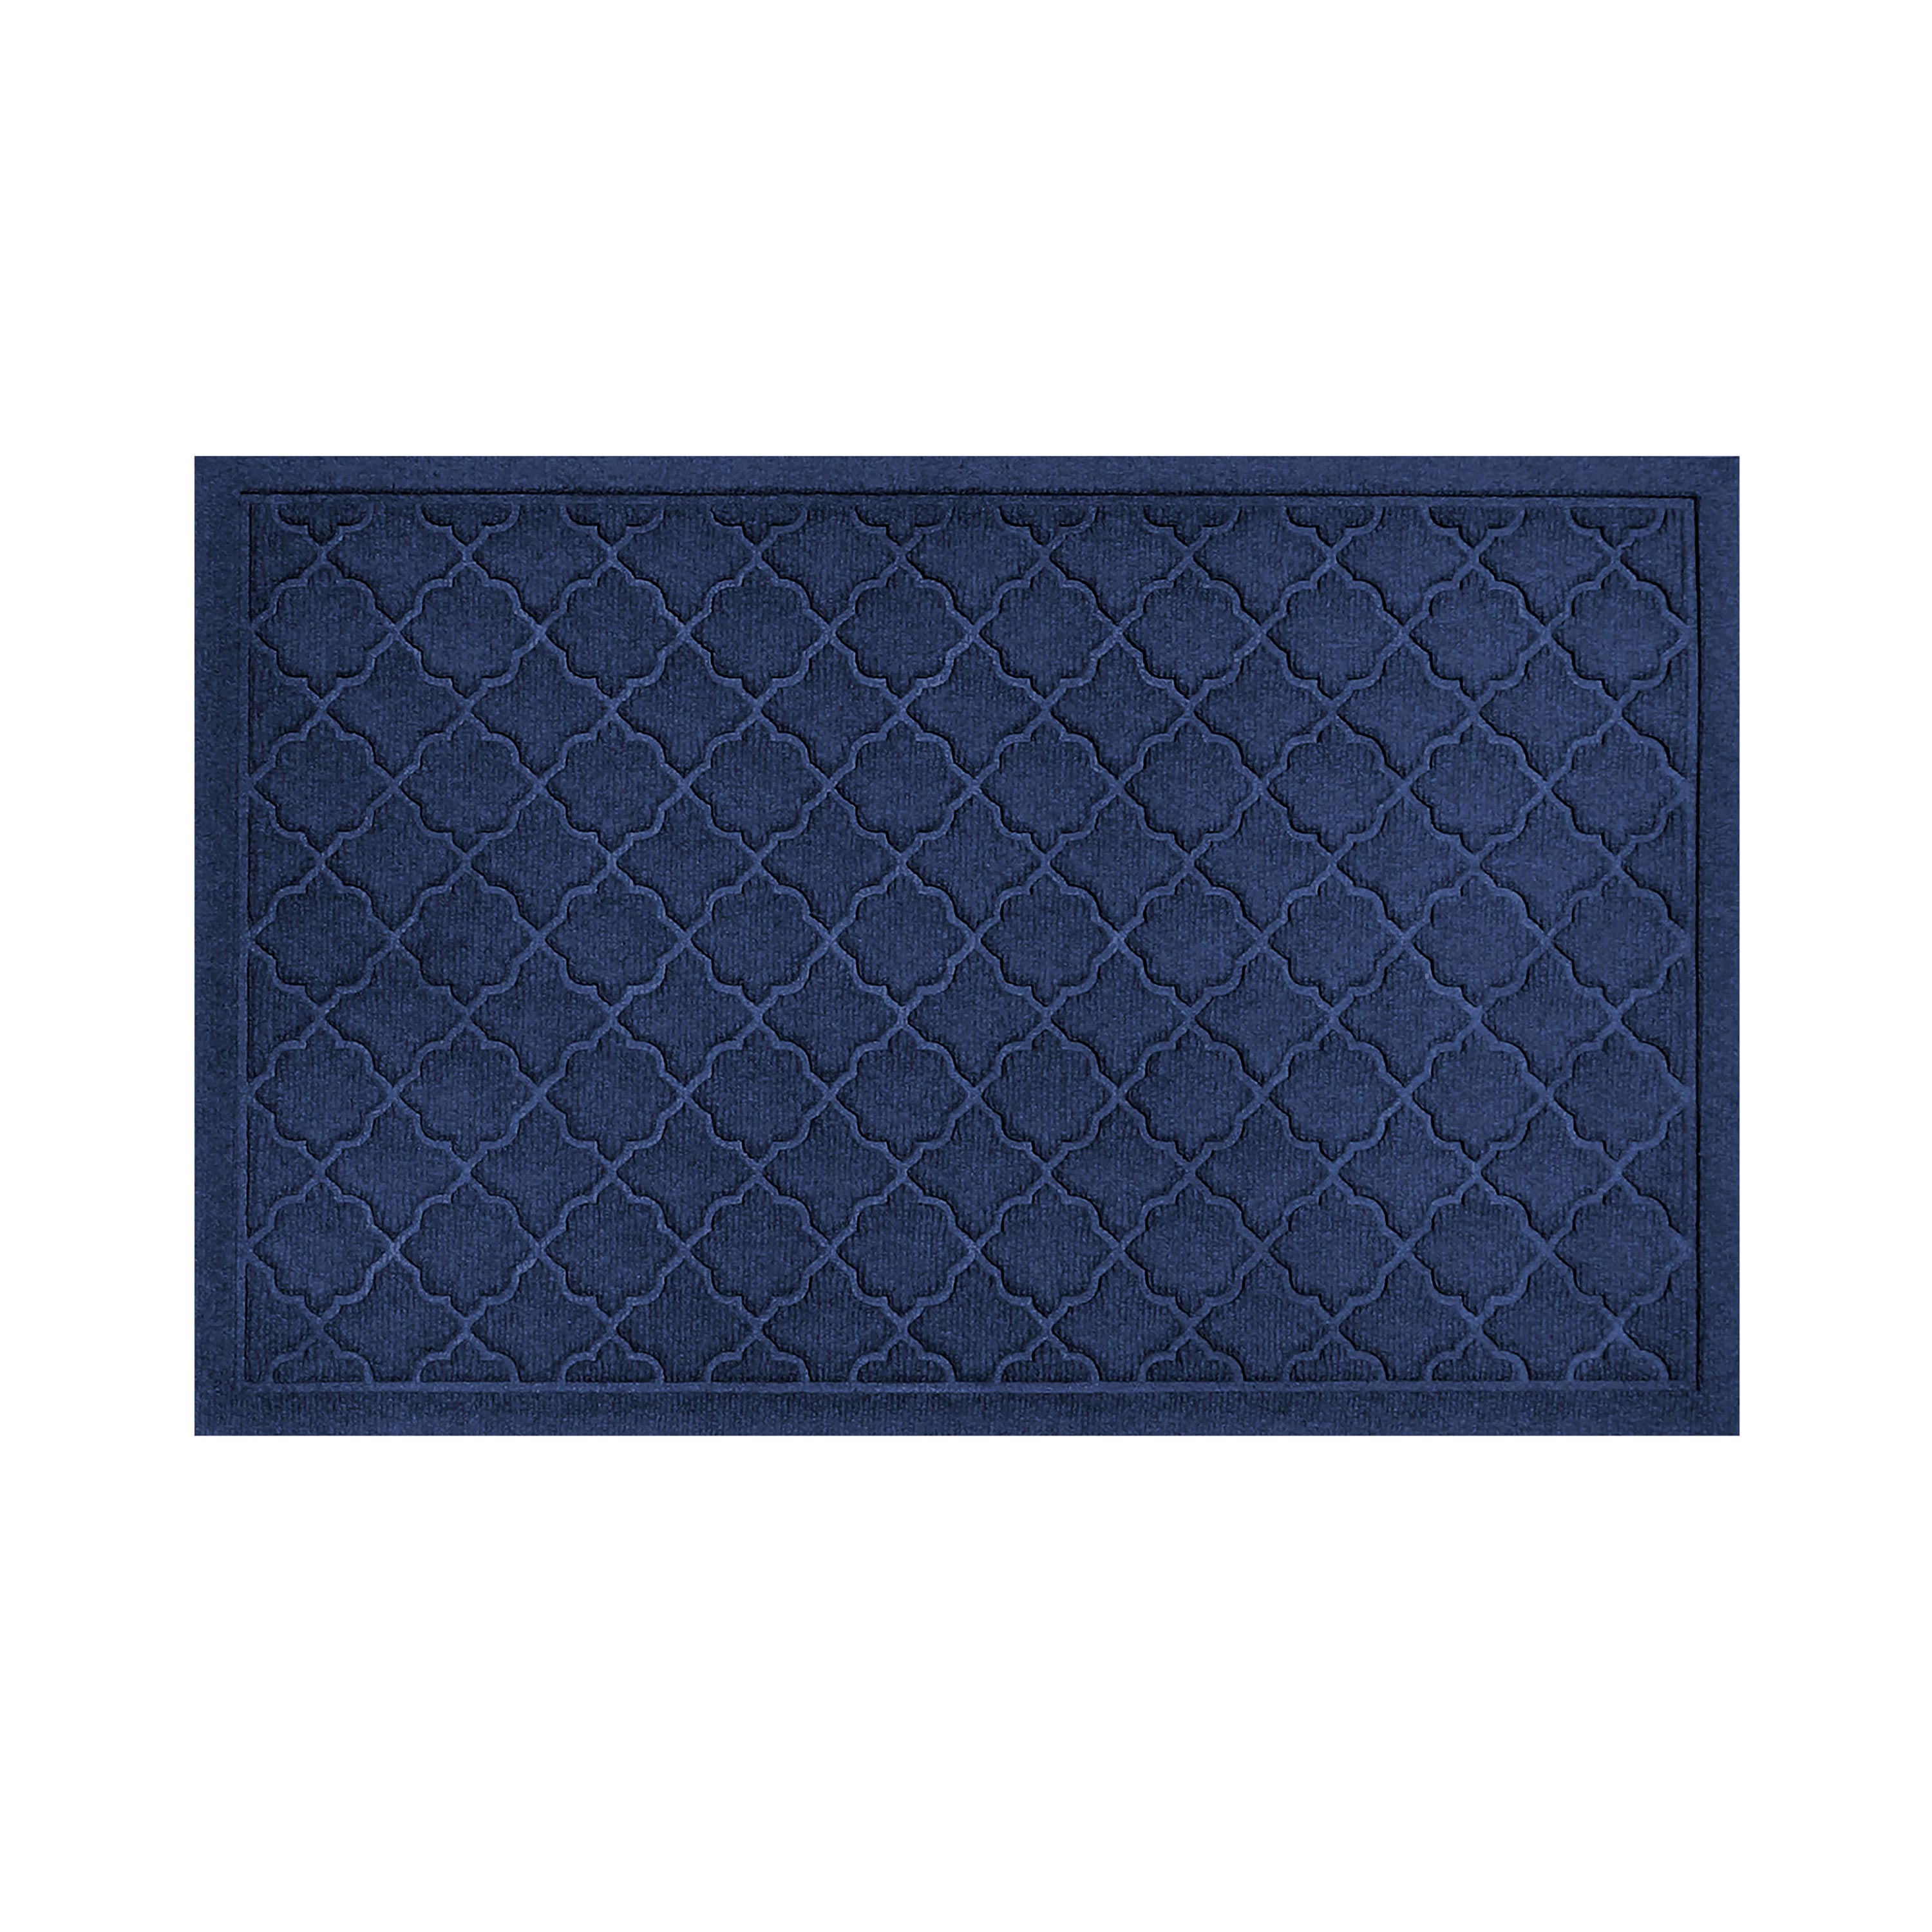 Jennya 71 L x 47 W Non-Slip Indoor Door Mat Corrigan Studio Color: Dark Blue, Mat Size: 0.40 H x 23.50 W x 35.50 L